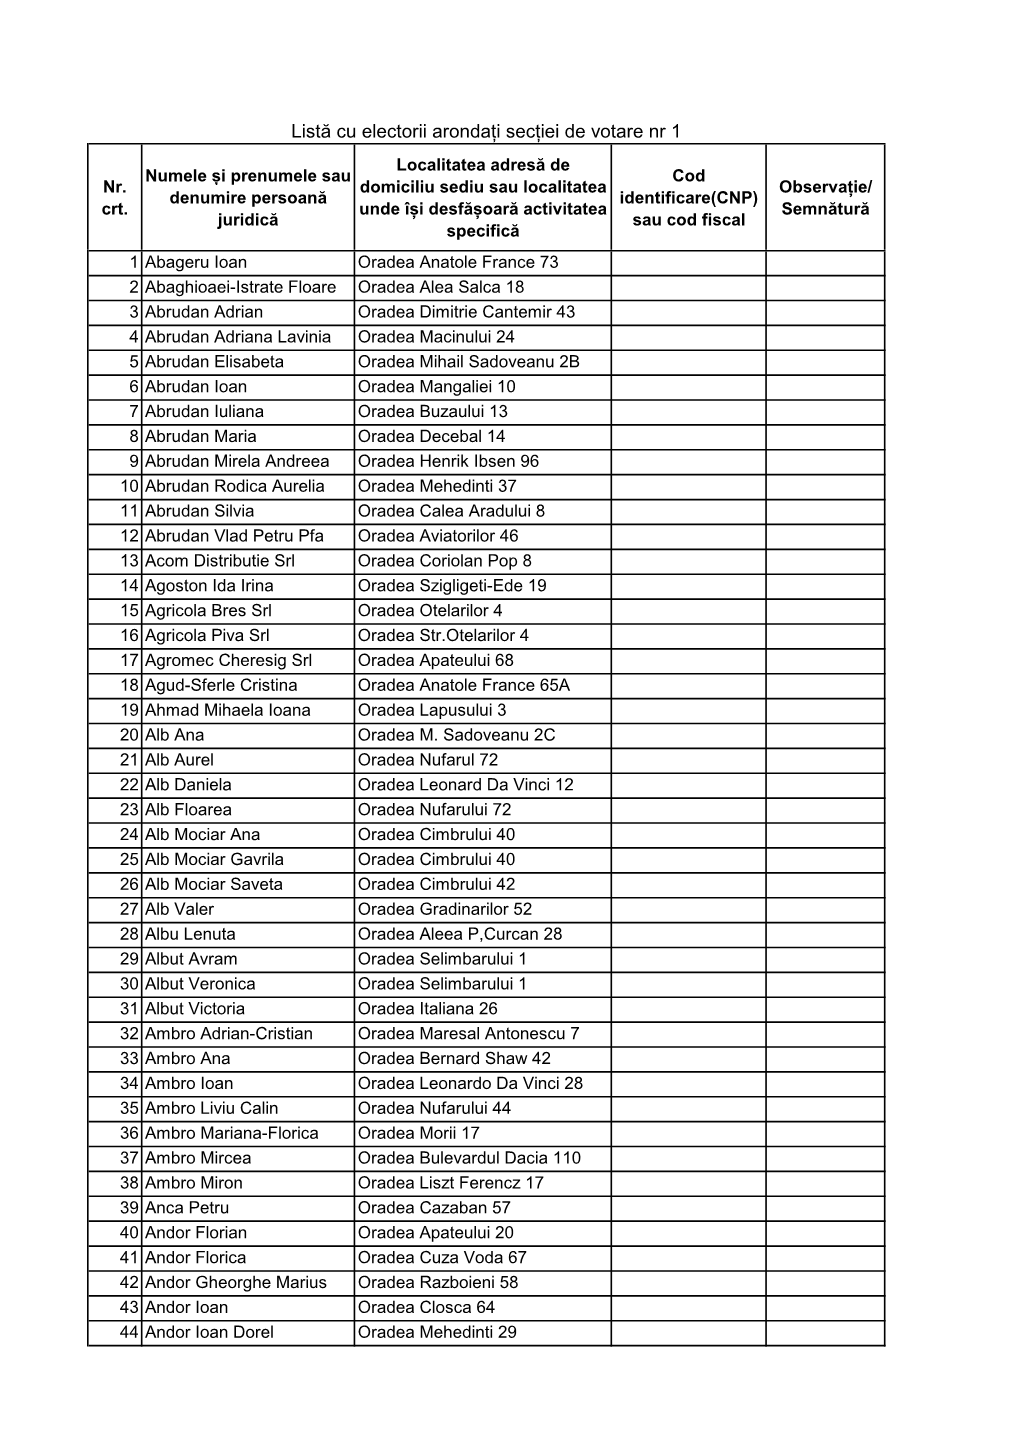 Lista Electorala Pentru Afisare.Xlsx